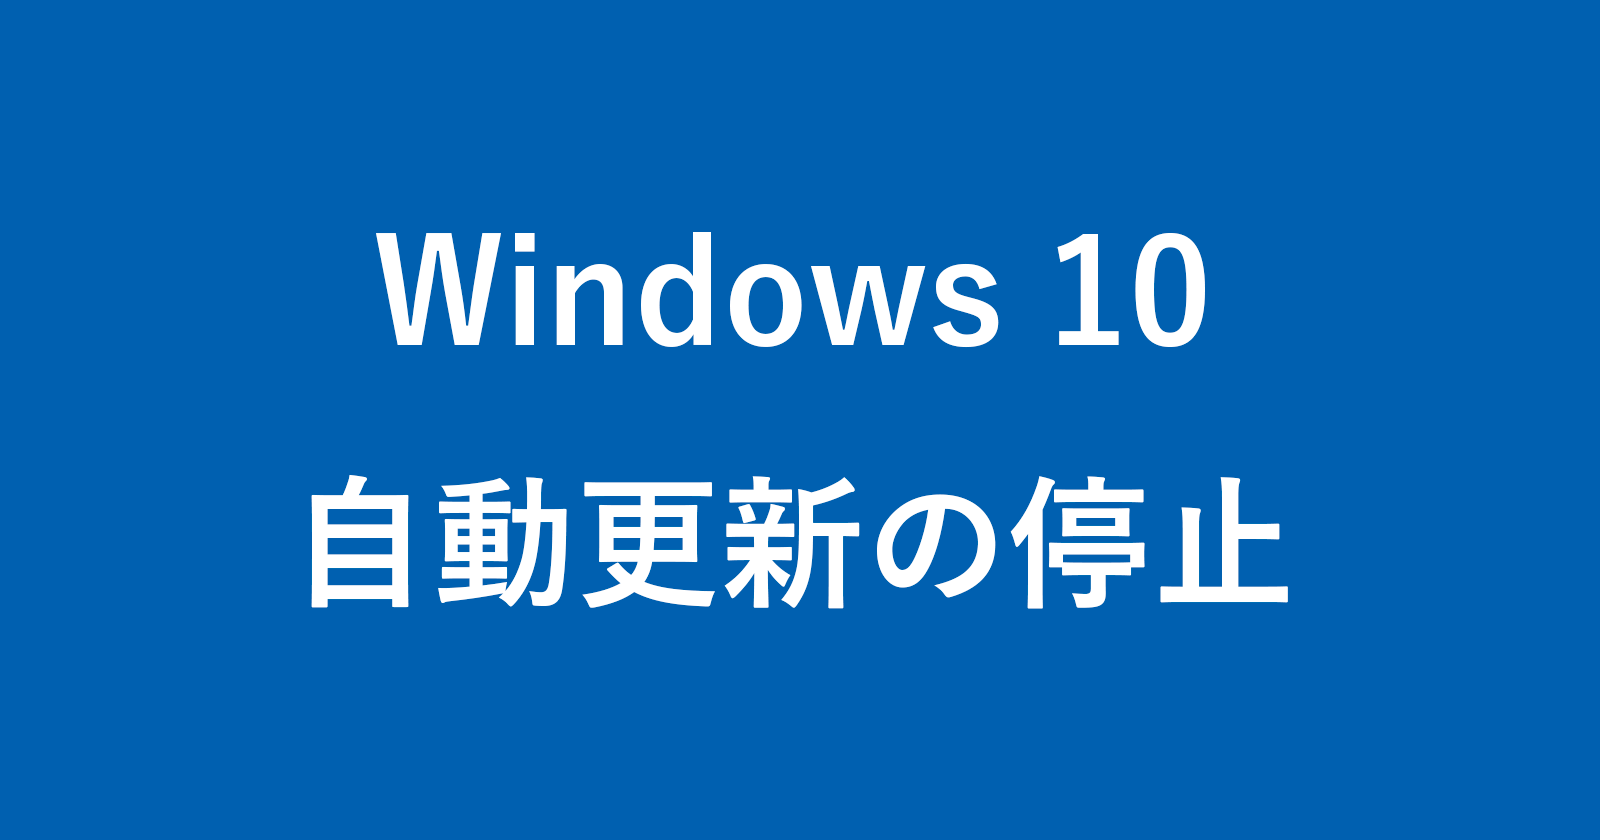 windows 10 stop update